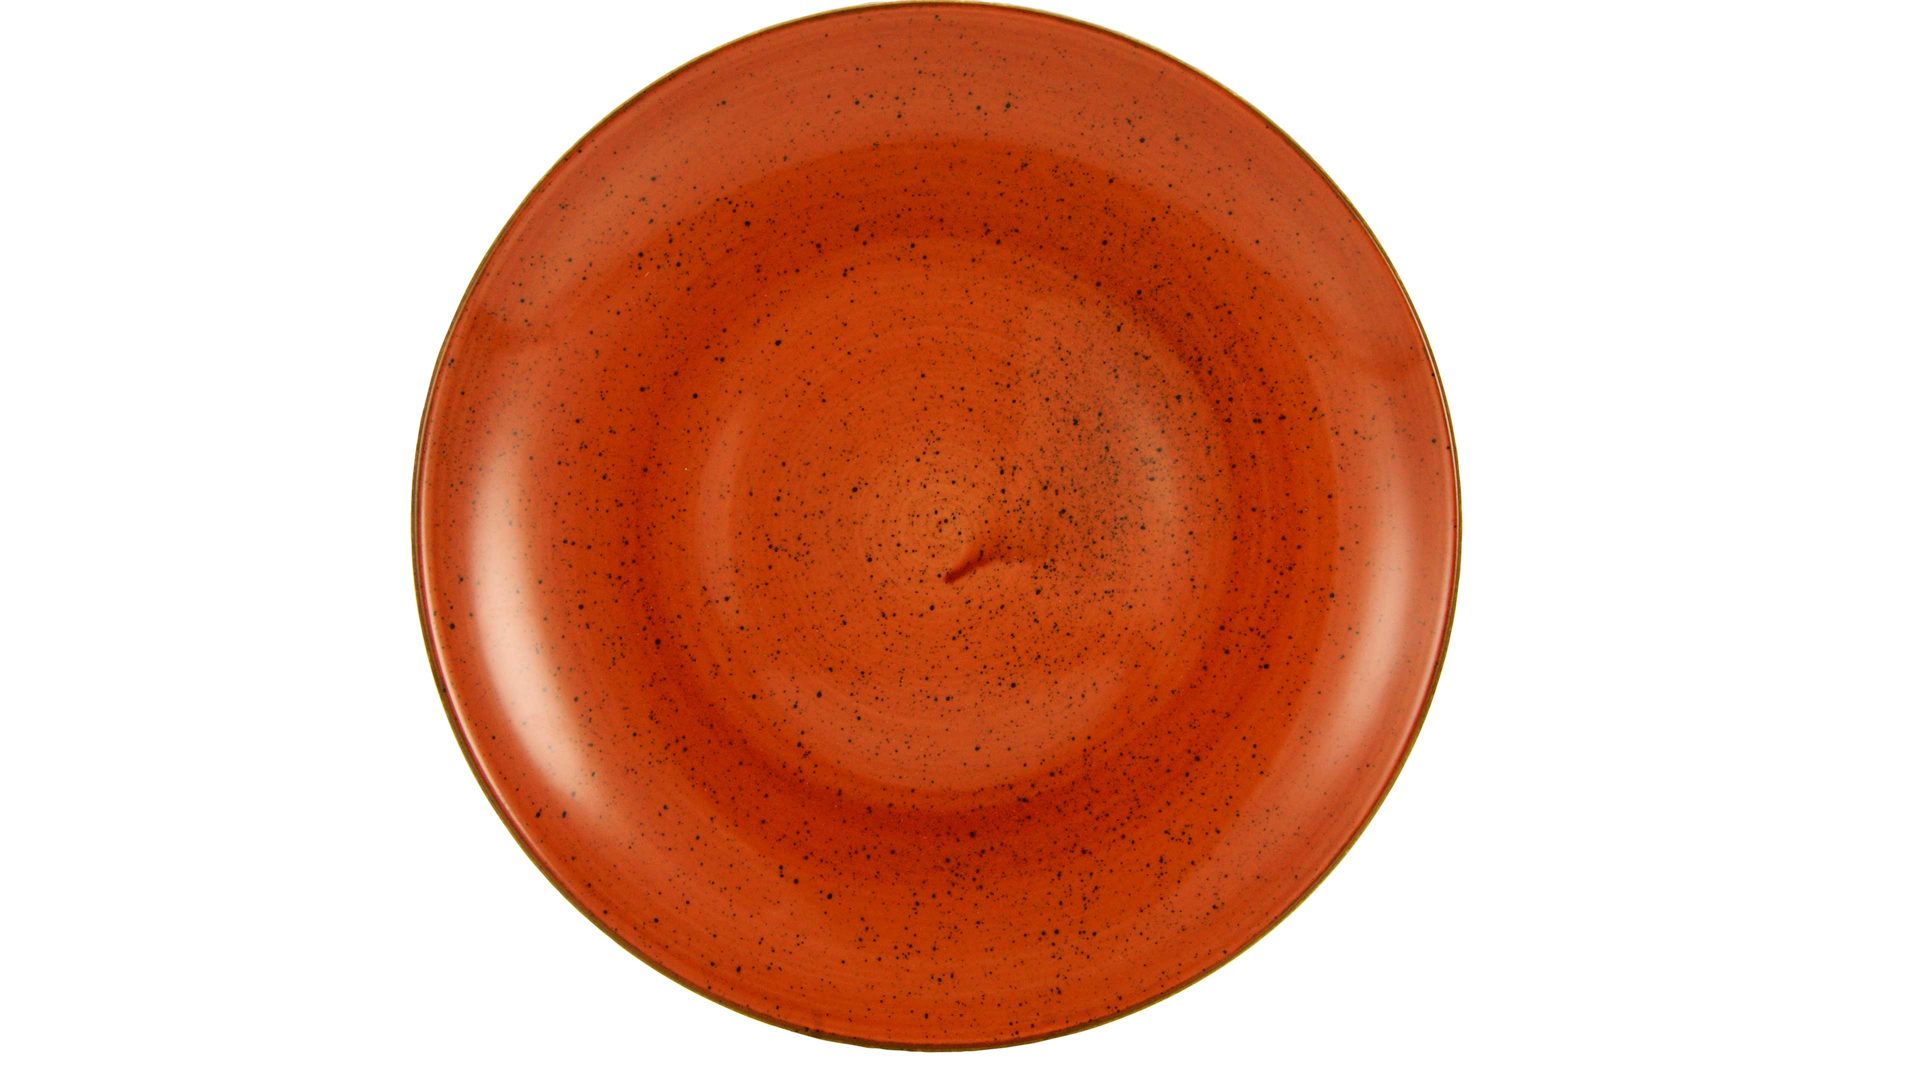 Essteller Creatable aus Porzellan in Orange CREATABLE Vintage Nature – Essteller umbrafarbenes Porzellan – Durchmesser ca. 25 cm